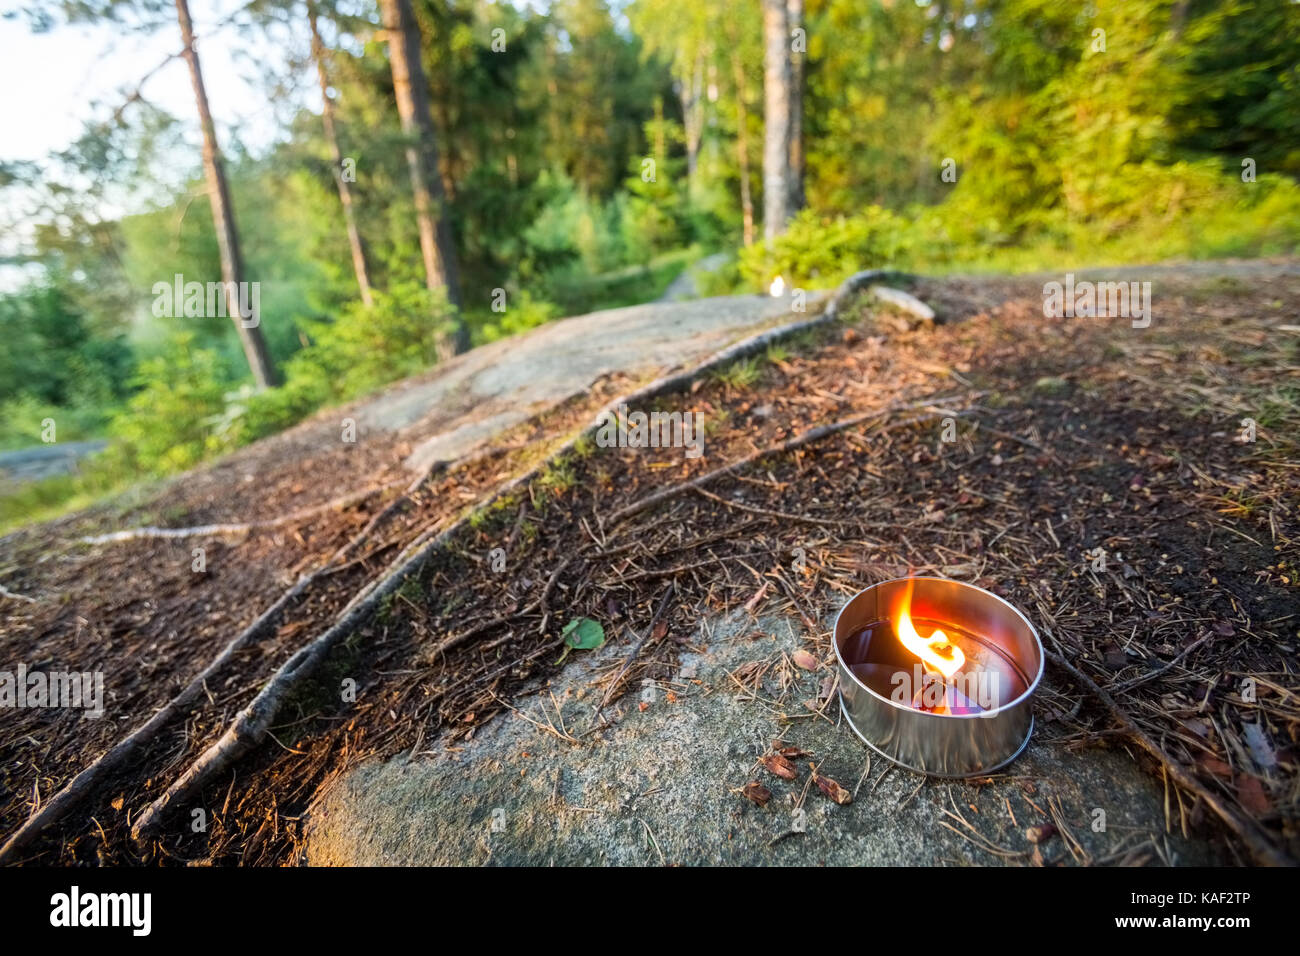 Tealight candle on rock contre des arbres Banque D'Images